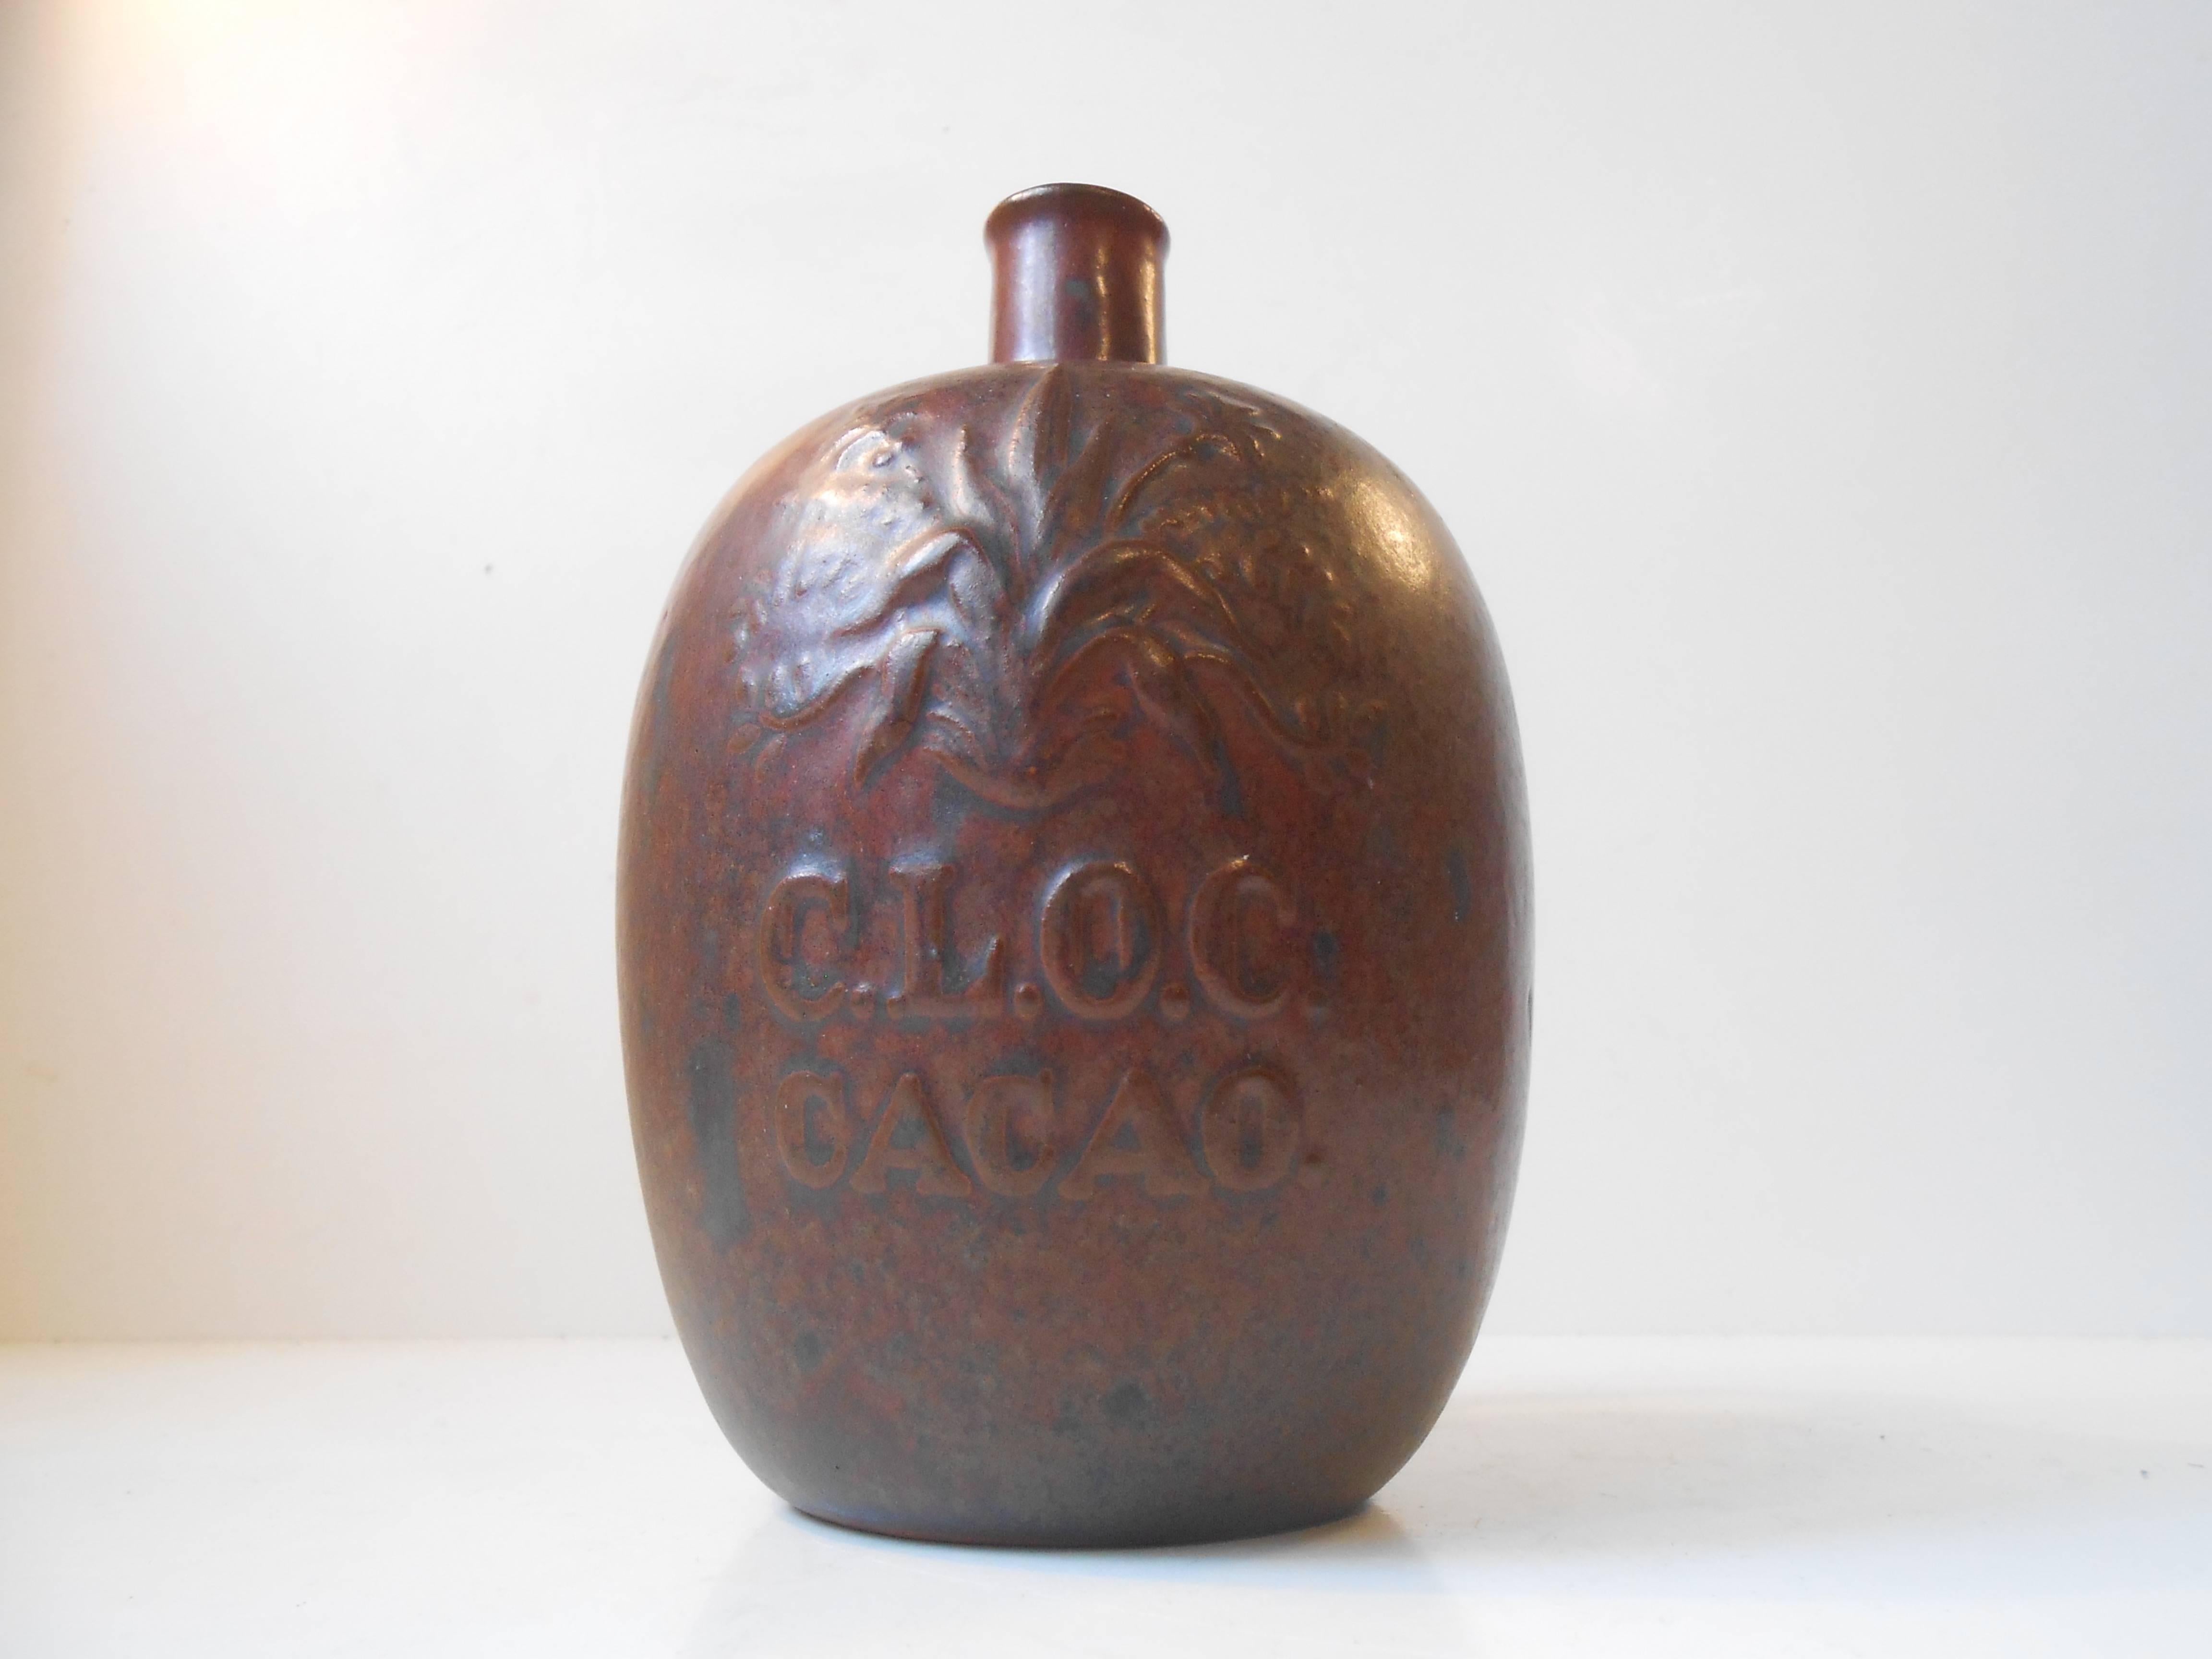 Art Deco Arne Bang Glazed Stoneware Bottle Vases, 1930s For Sale